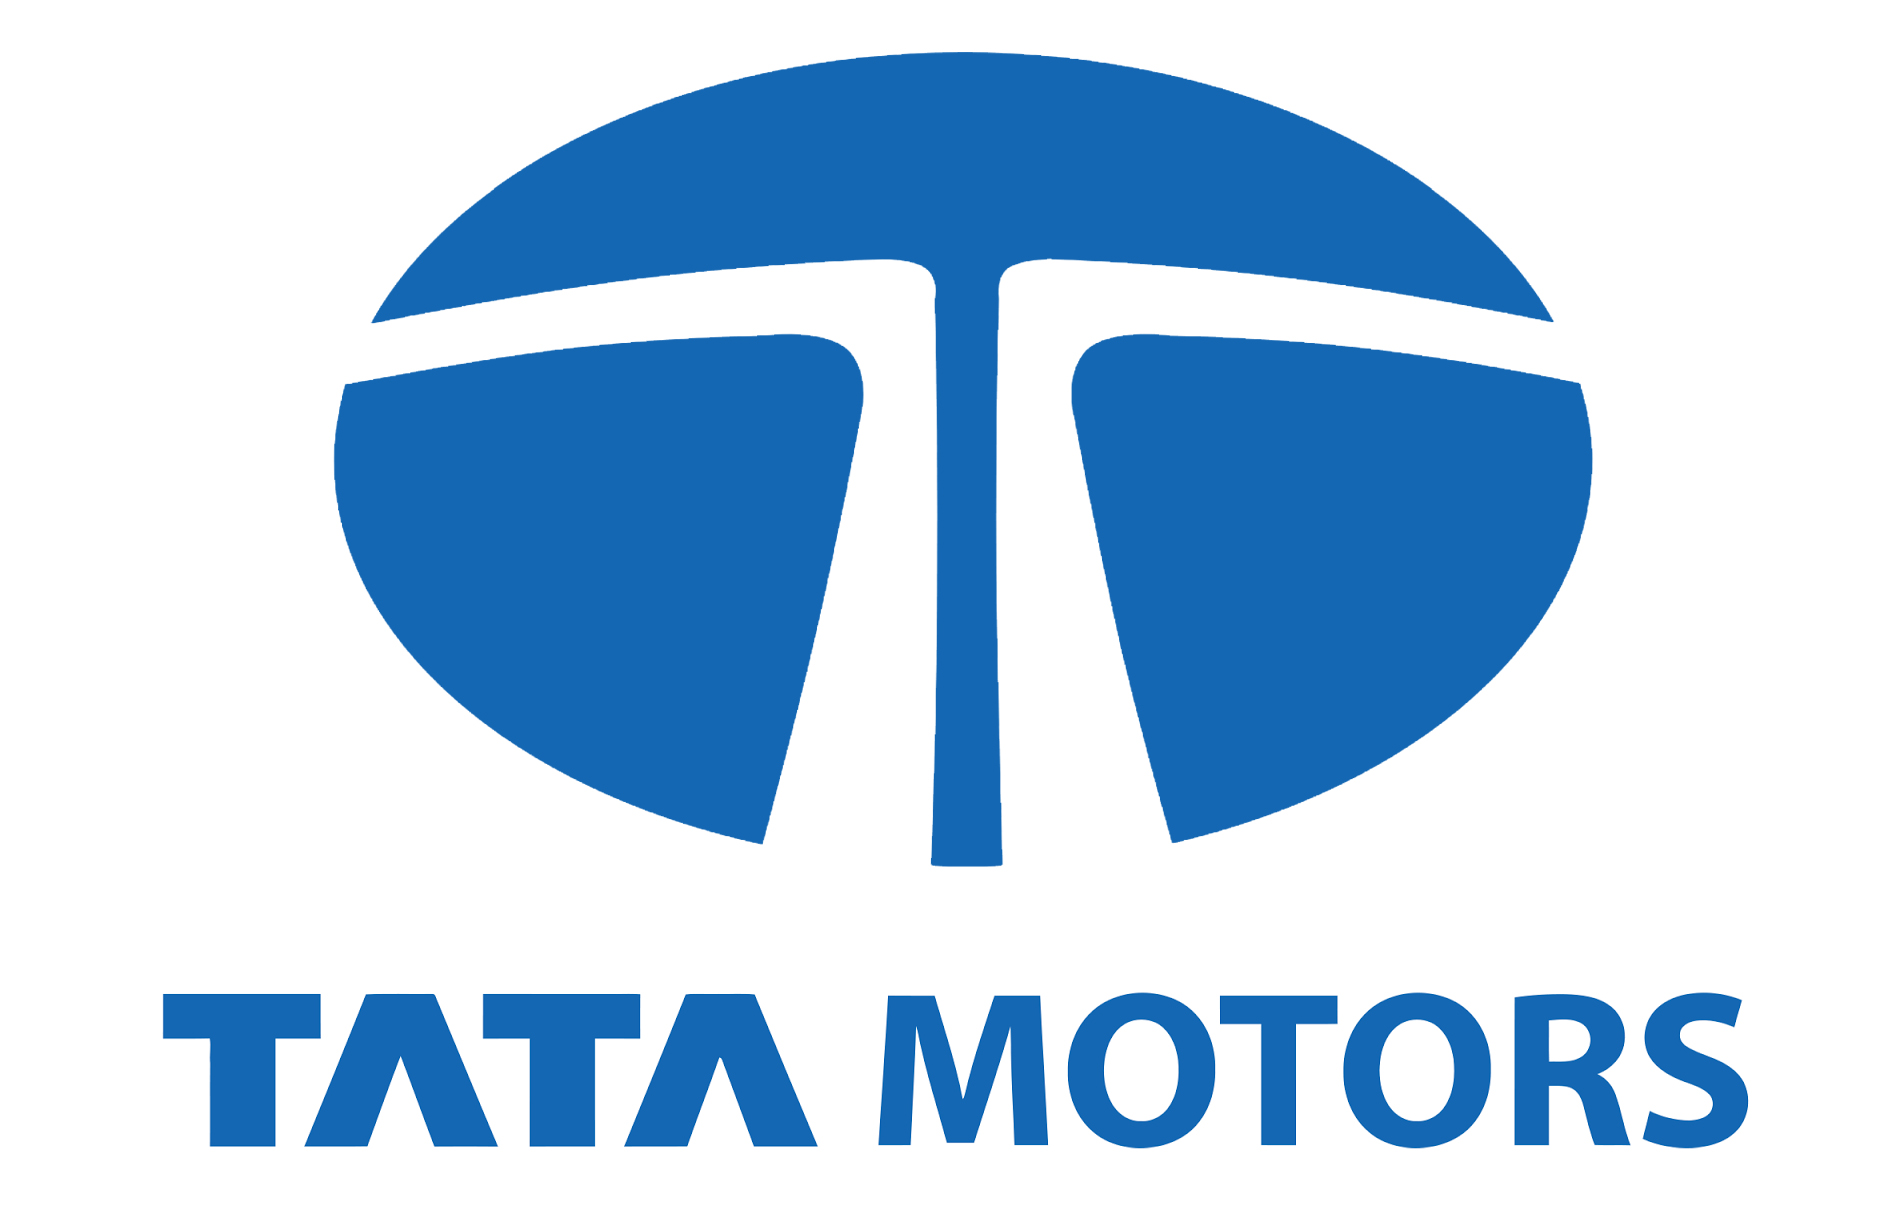 Tata Motors Cars Showroom - Standard - Logo